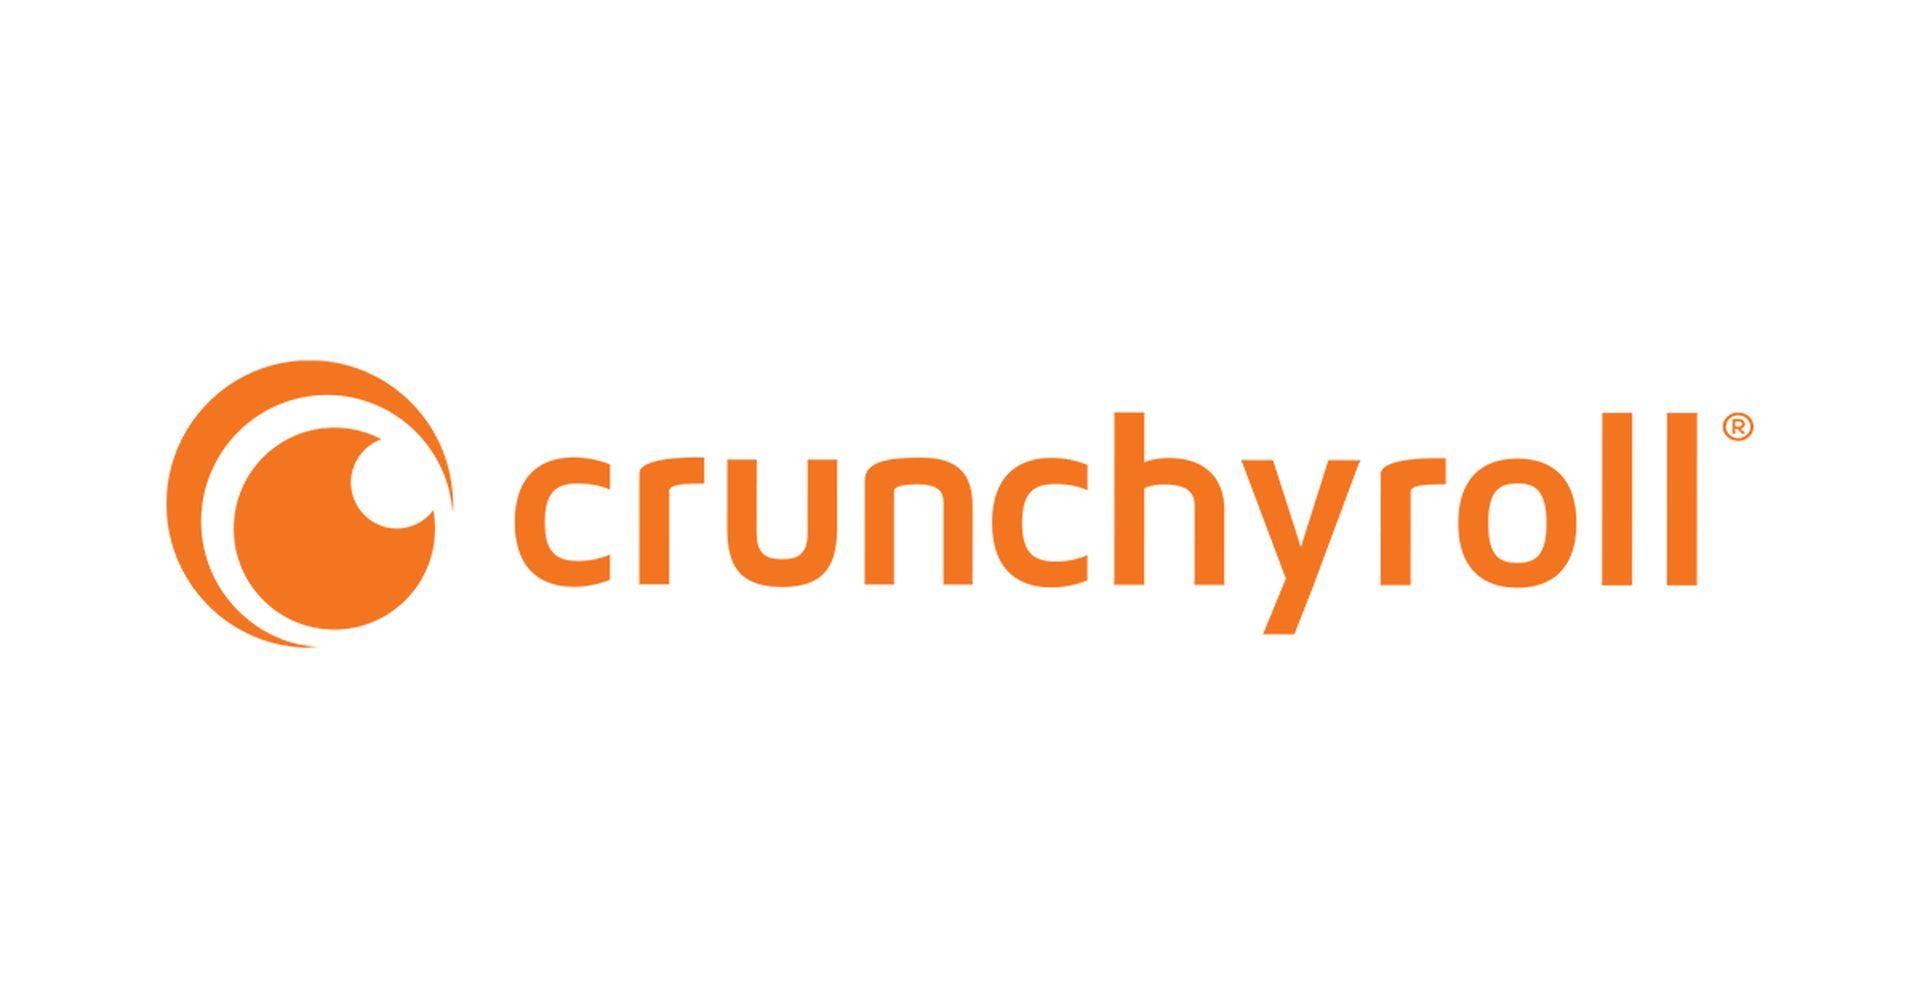 修正: Crunchyroll の次のエピソードが間違っている / 自動再生が機能しない